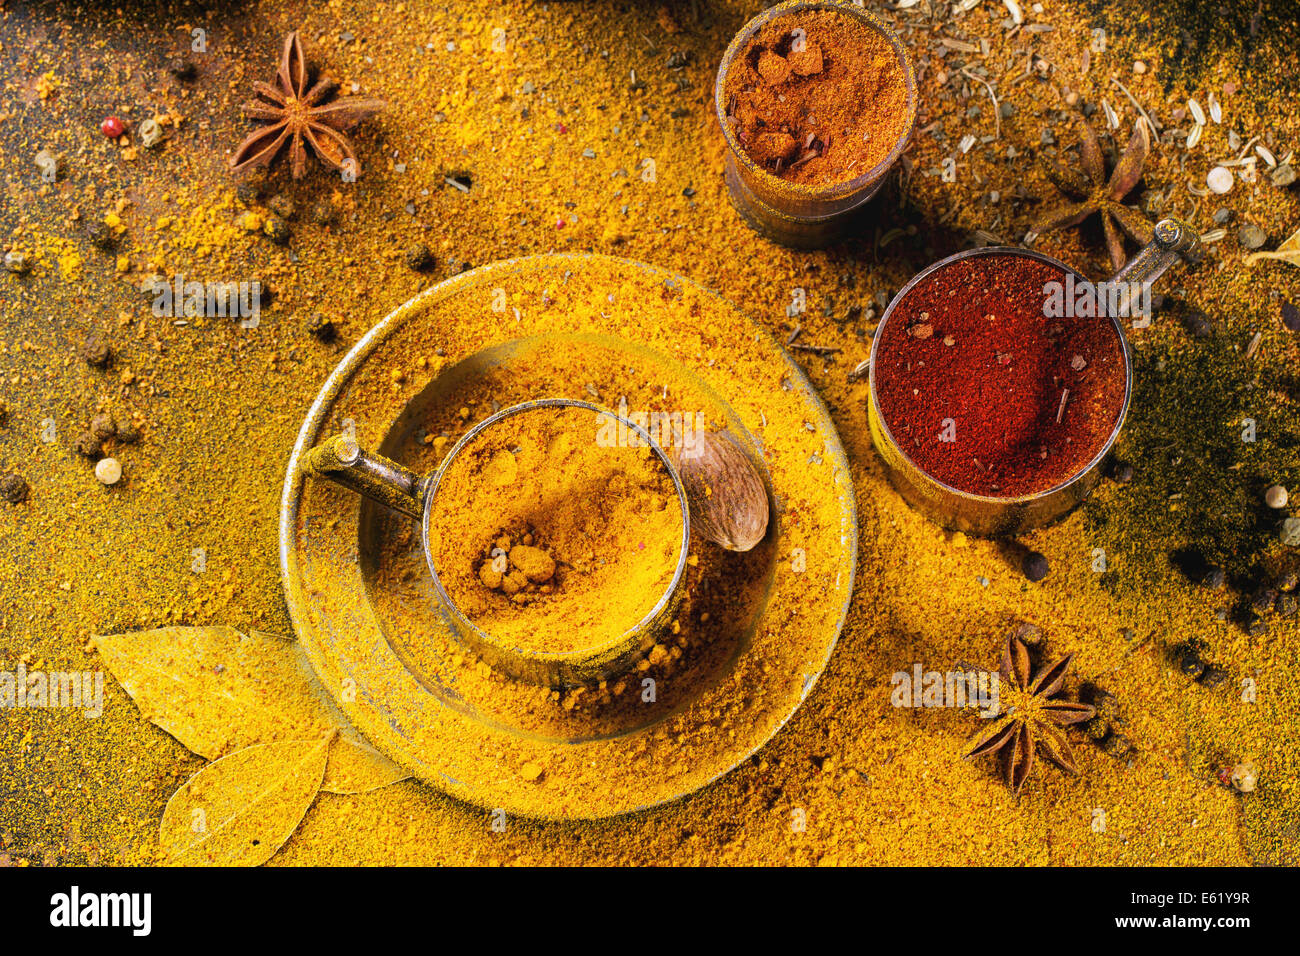 Satz von Gewürzen Pfeffer, Kurkuma, Anis, Koriander in Vintage Metallschalen über gelbe Curry-Pulver. Ansicht von oben. Stockfoto